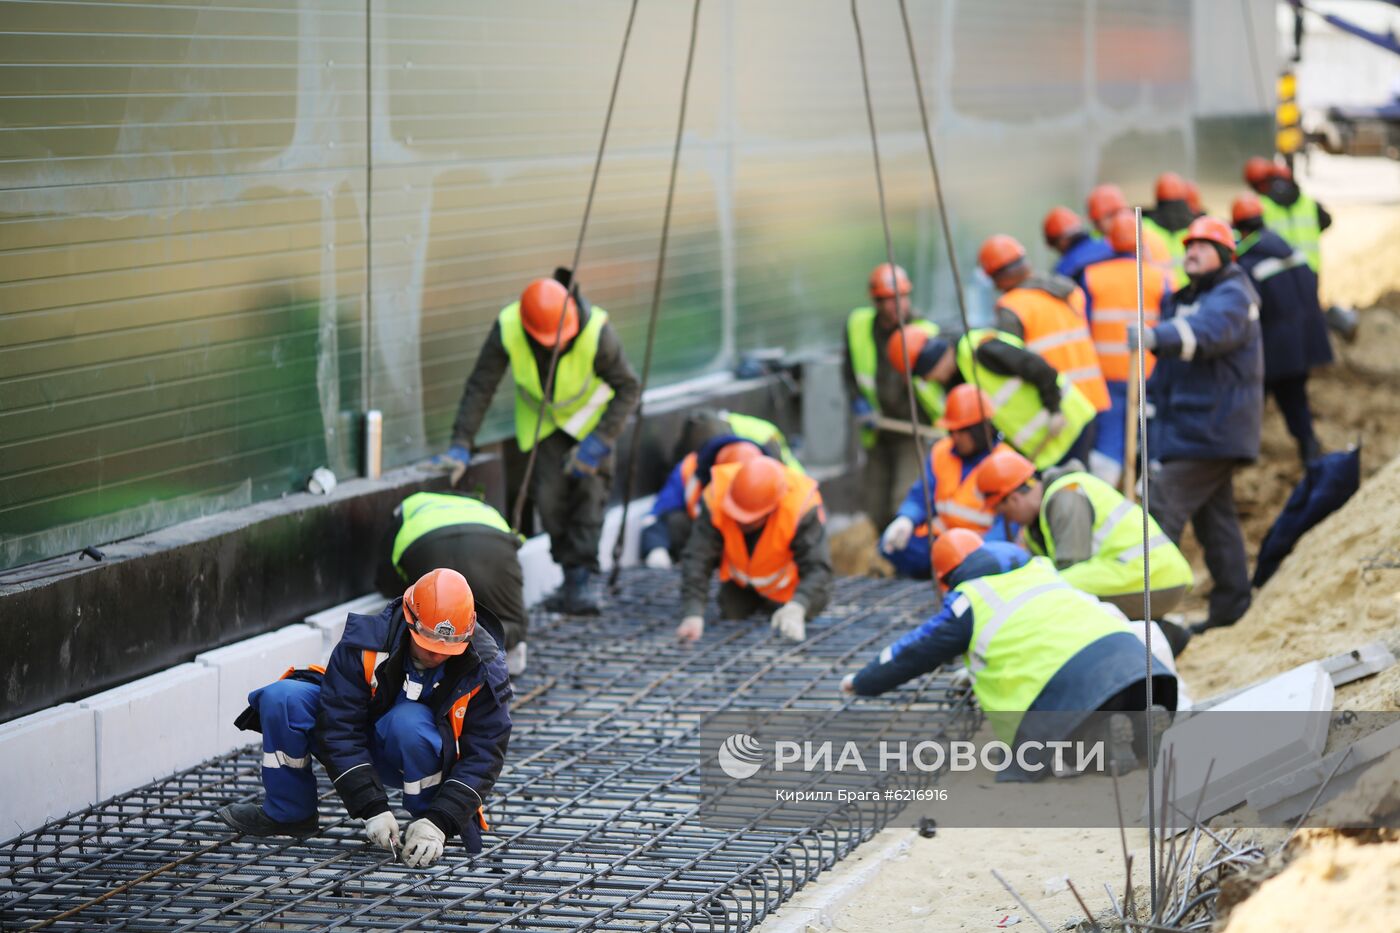 Строительство инфекционных центров в городах России